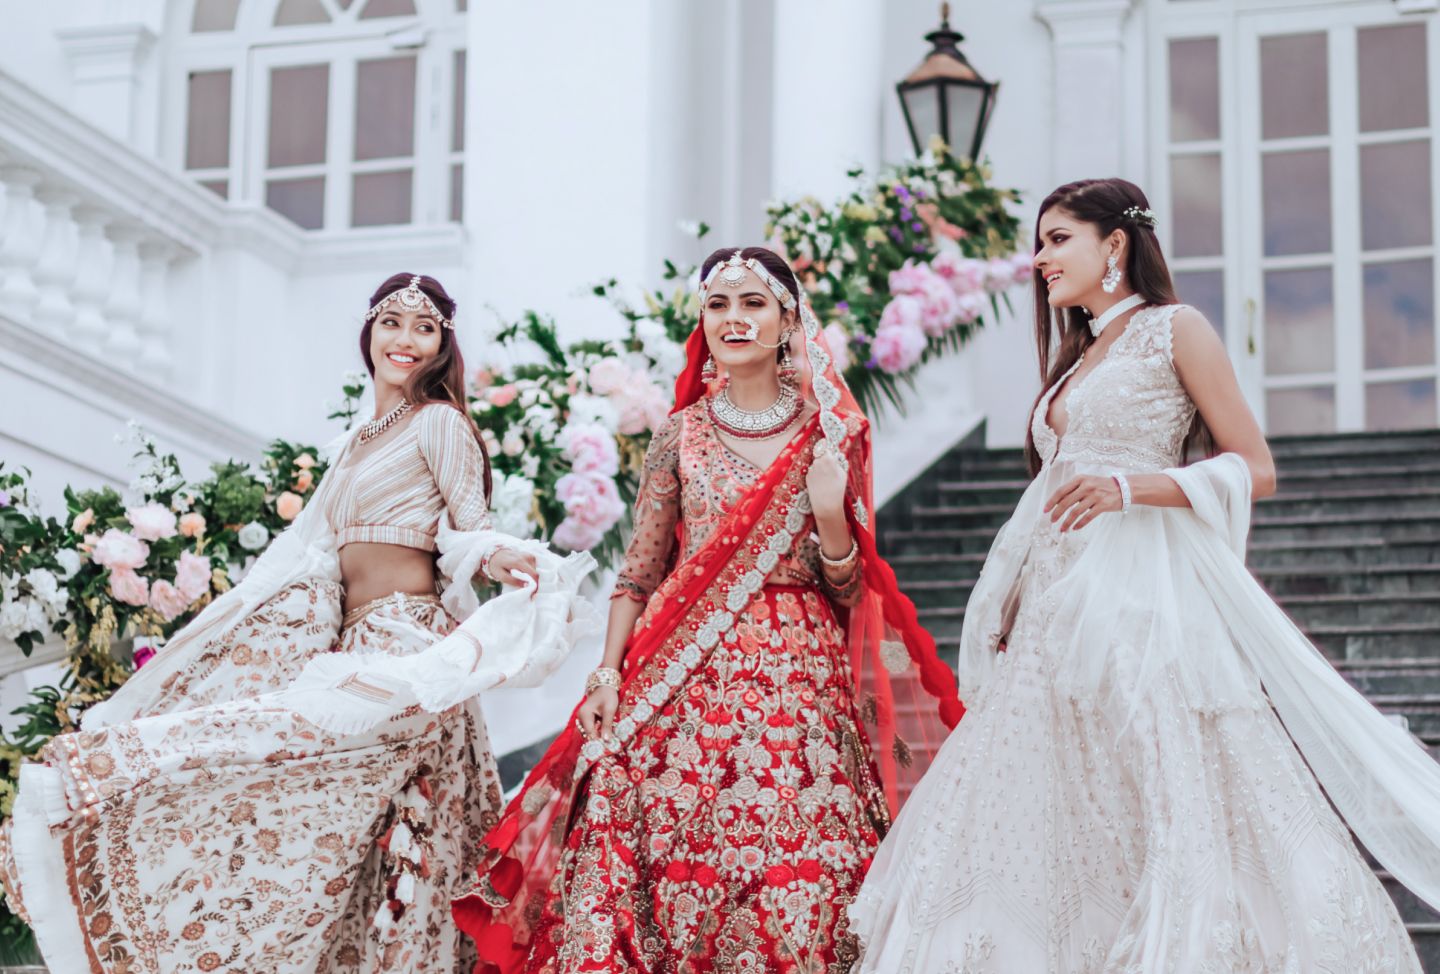 Timeless Weddings - Luxury Venues by Taj Hotels